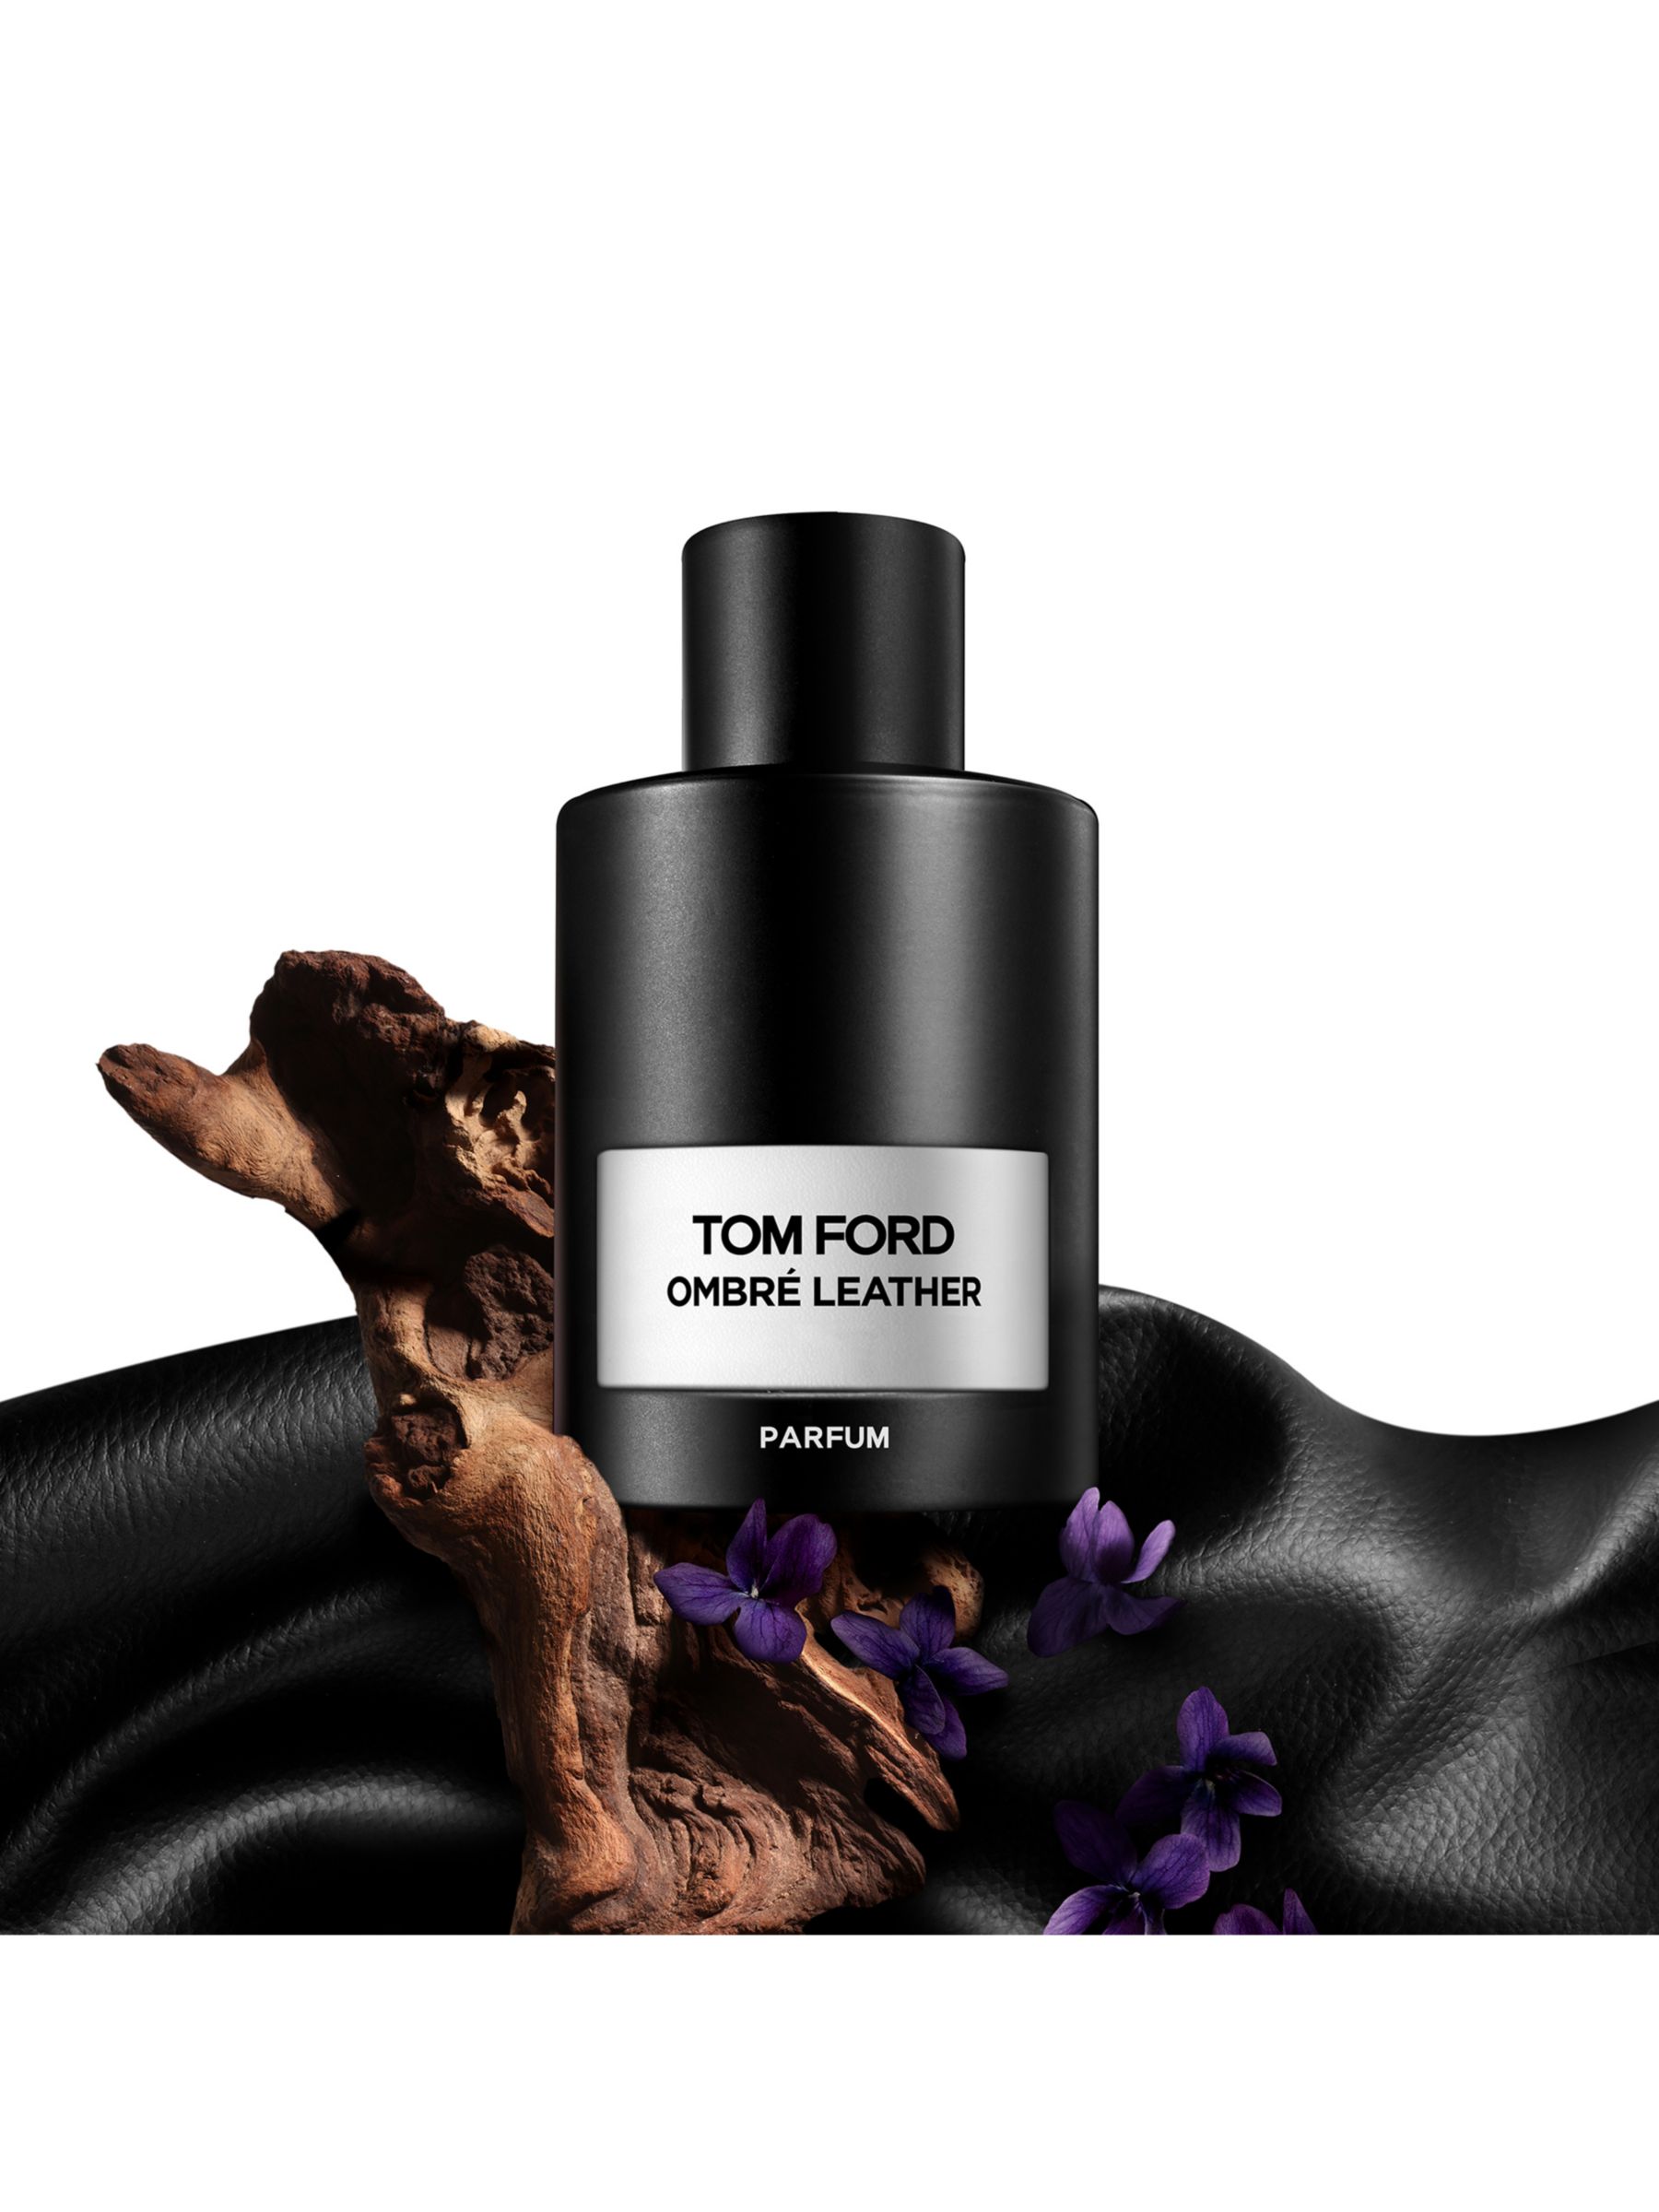 TOM FORD Ombré Leather Parfum, 50ml